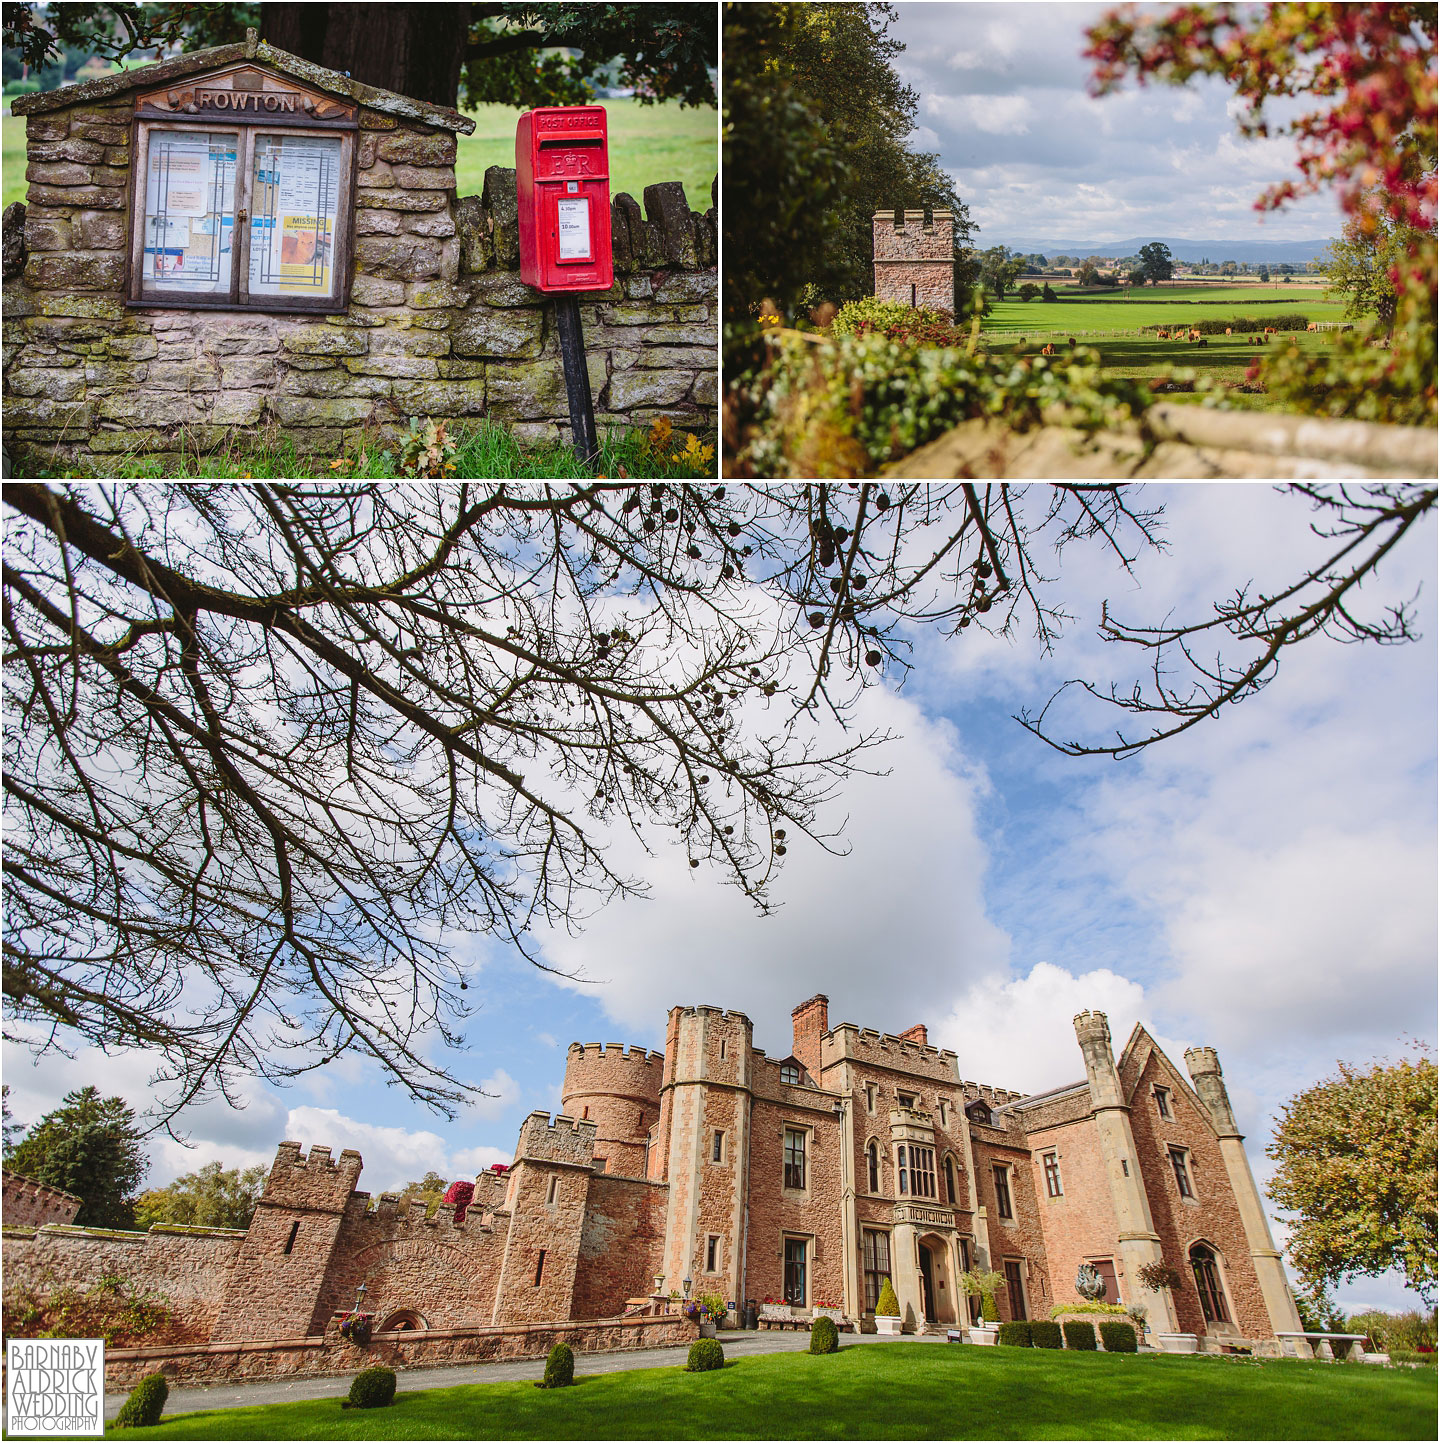 Wedding castle venue details at Rowton Caste, Shropshire Wedding Photographer, Shrewsbury wedding venue, Amazing UK Castle Wedding